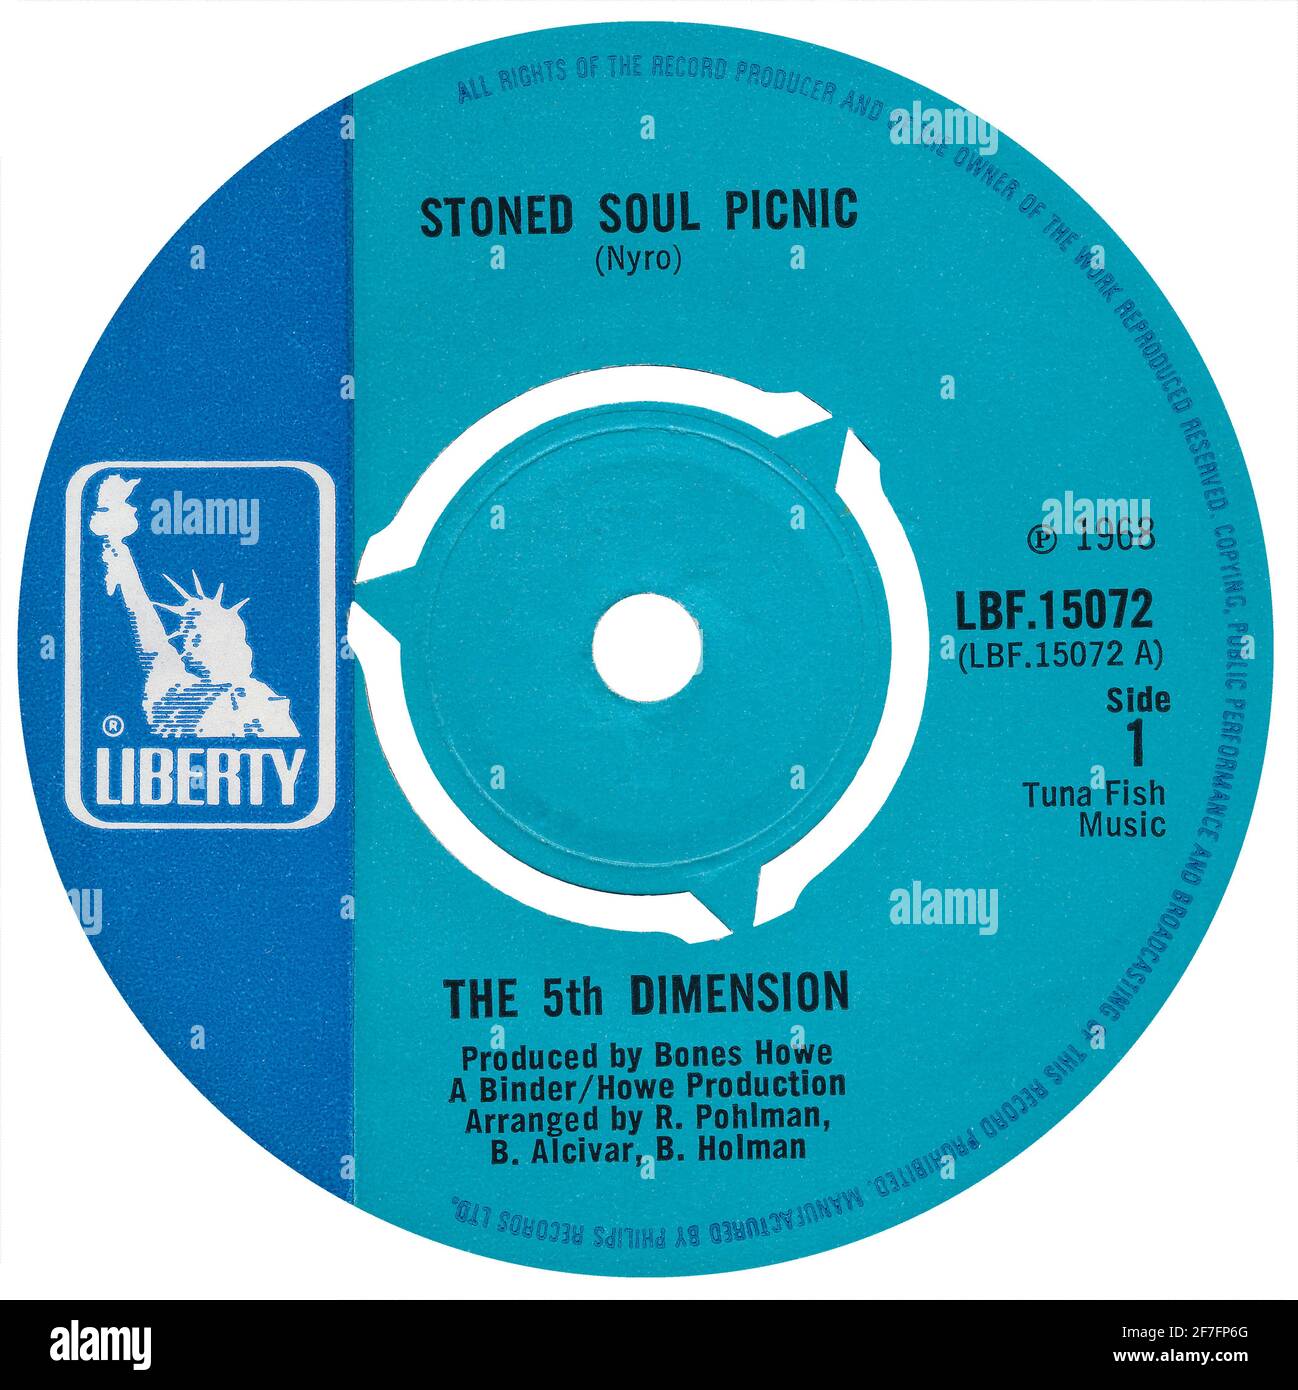 45 RPM 7' etichetta discografica britannica di Stoned Soul picnic della 5th Dimension sull'etichetta Liberty del 1968. Scritto da Laura Nyro e prodotto da Bones Howe. Foto Stock